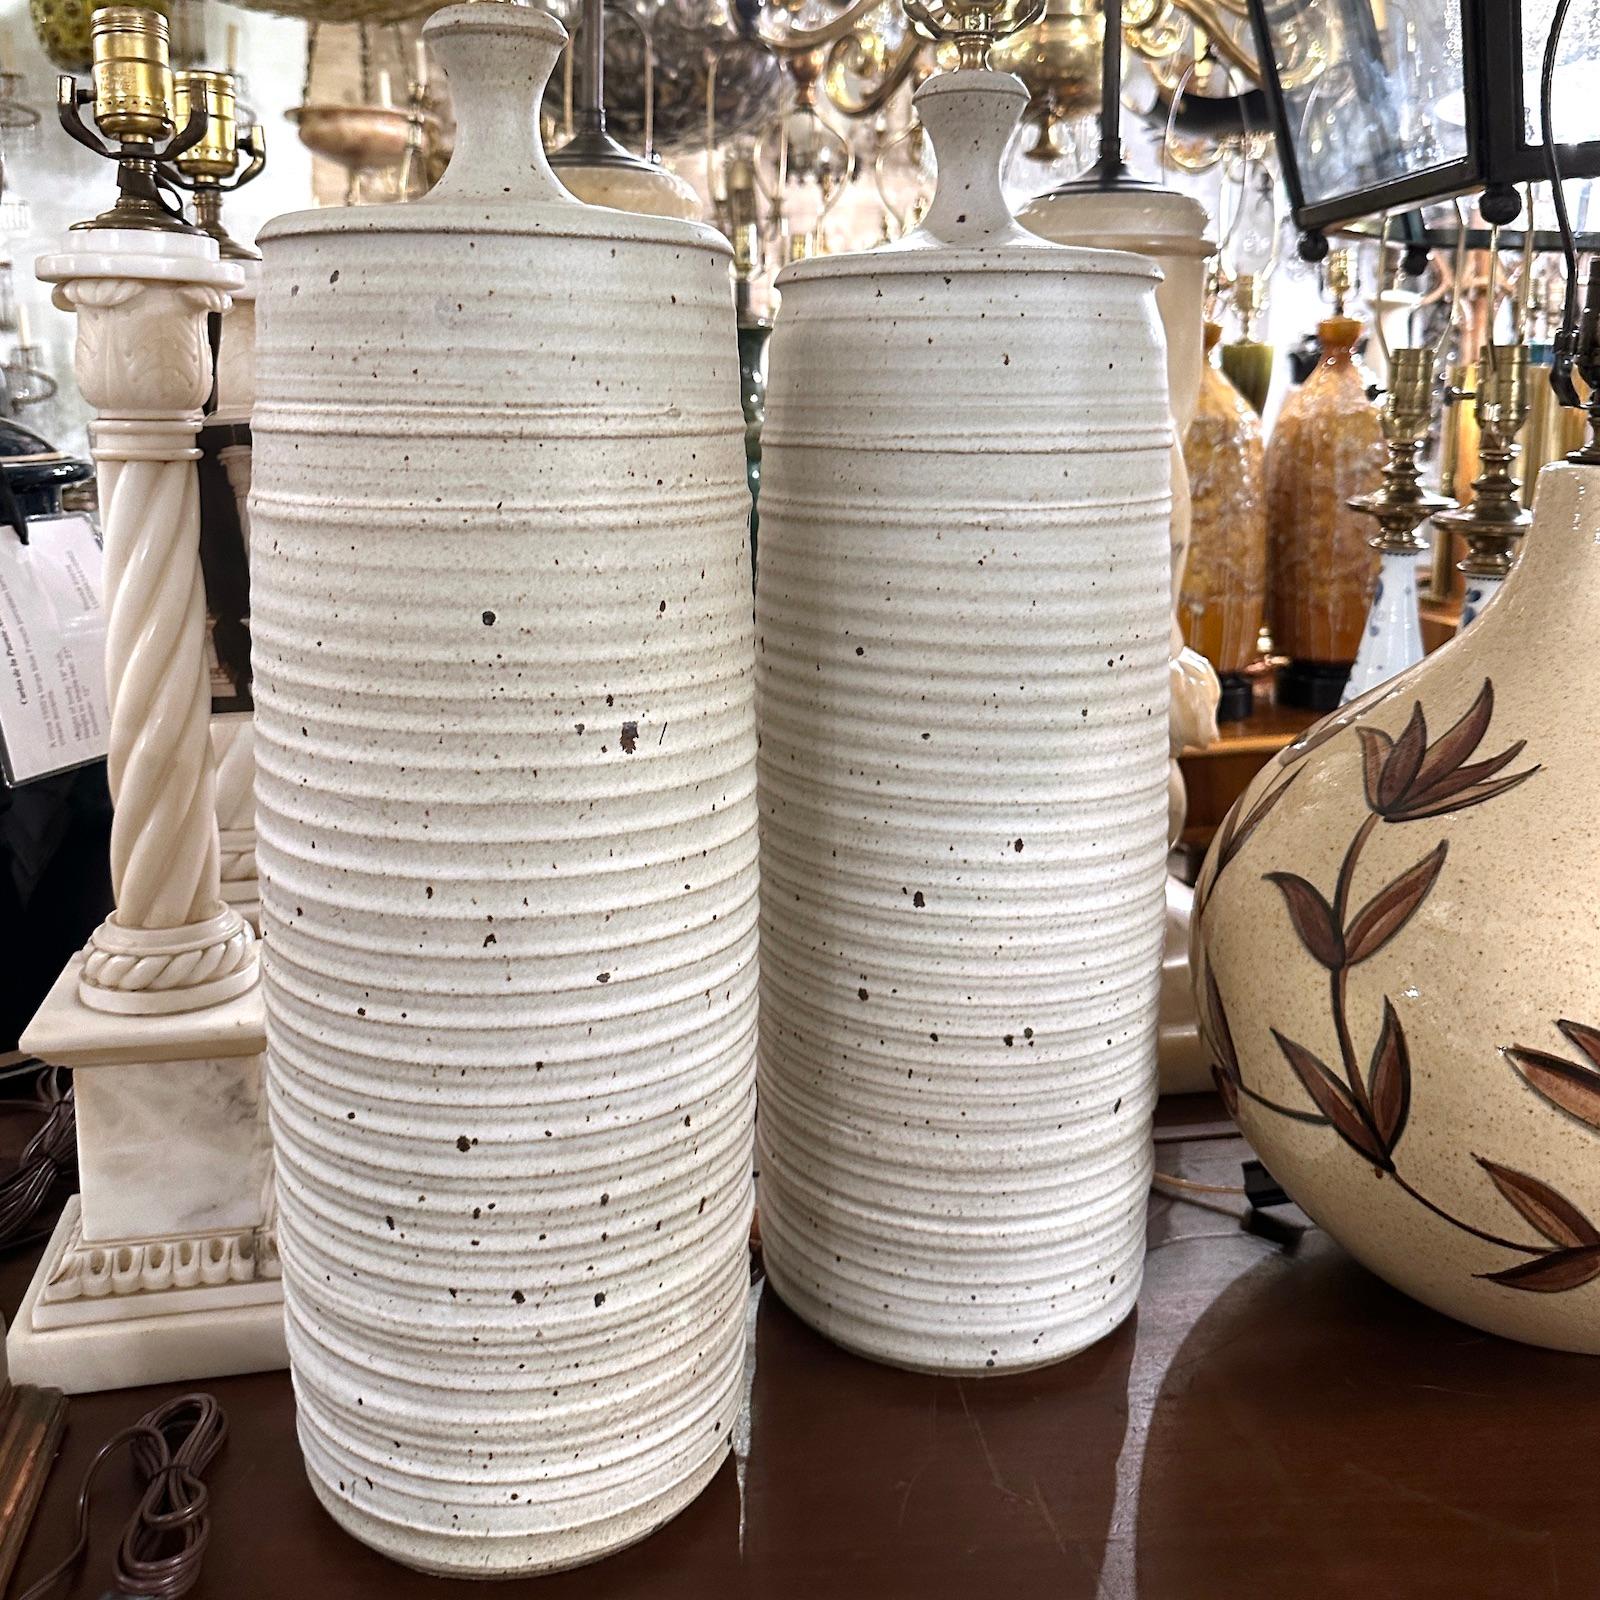 Ein Paar große schwedische Keramik-Tischlampen aus den 1960er Jahren.

Abmessungen:
Höhe des Körpers: 24